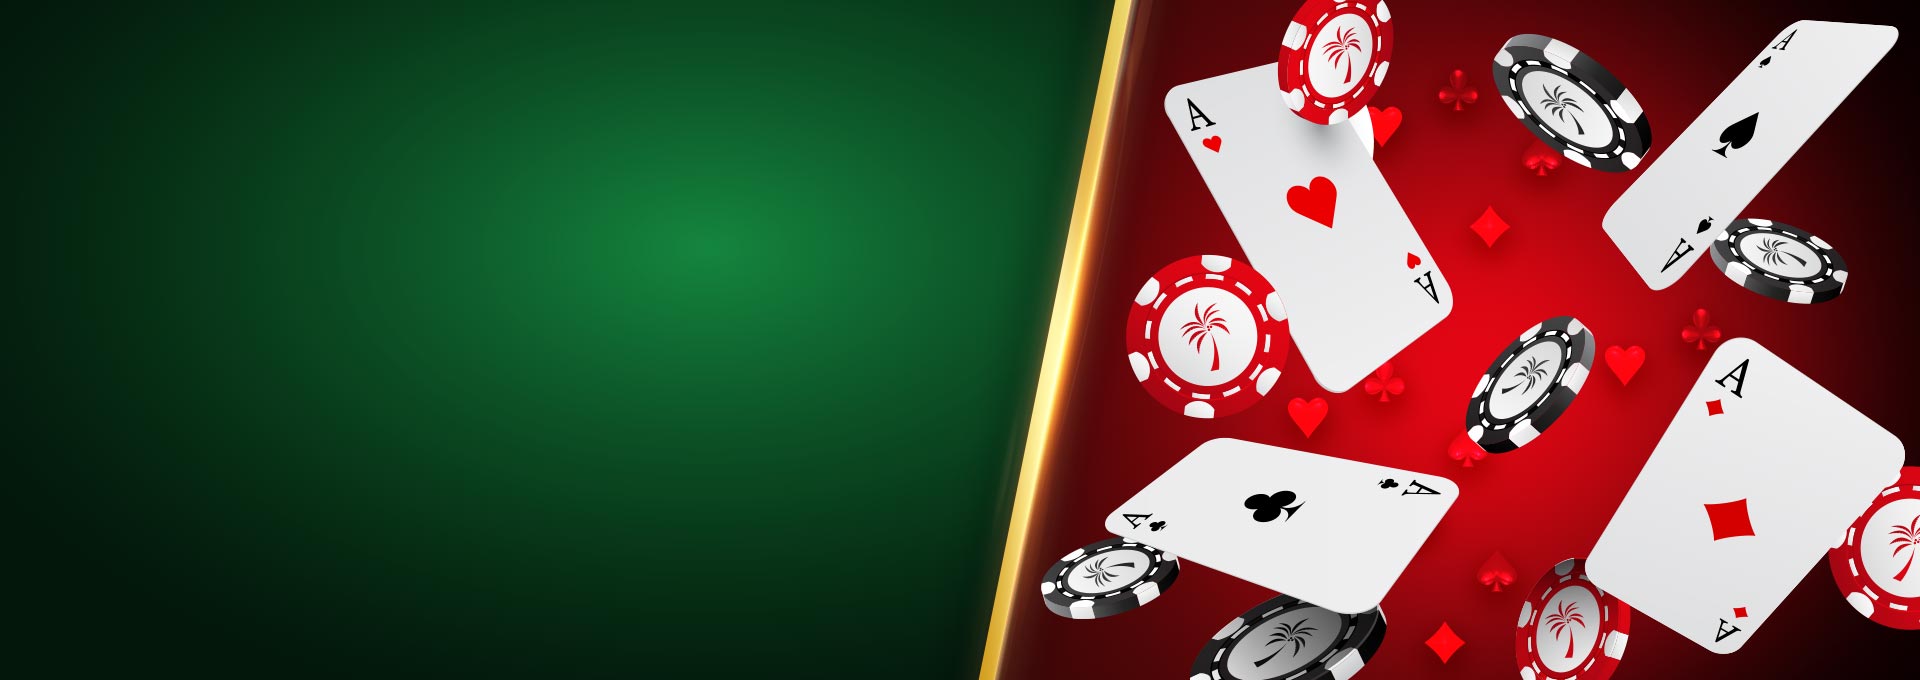 Casino room 50 free spins no deposit brasil